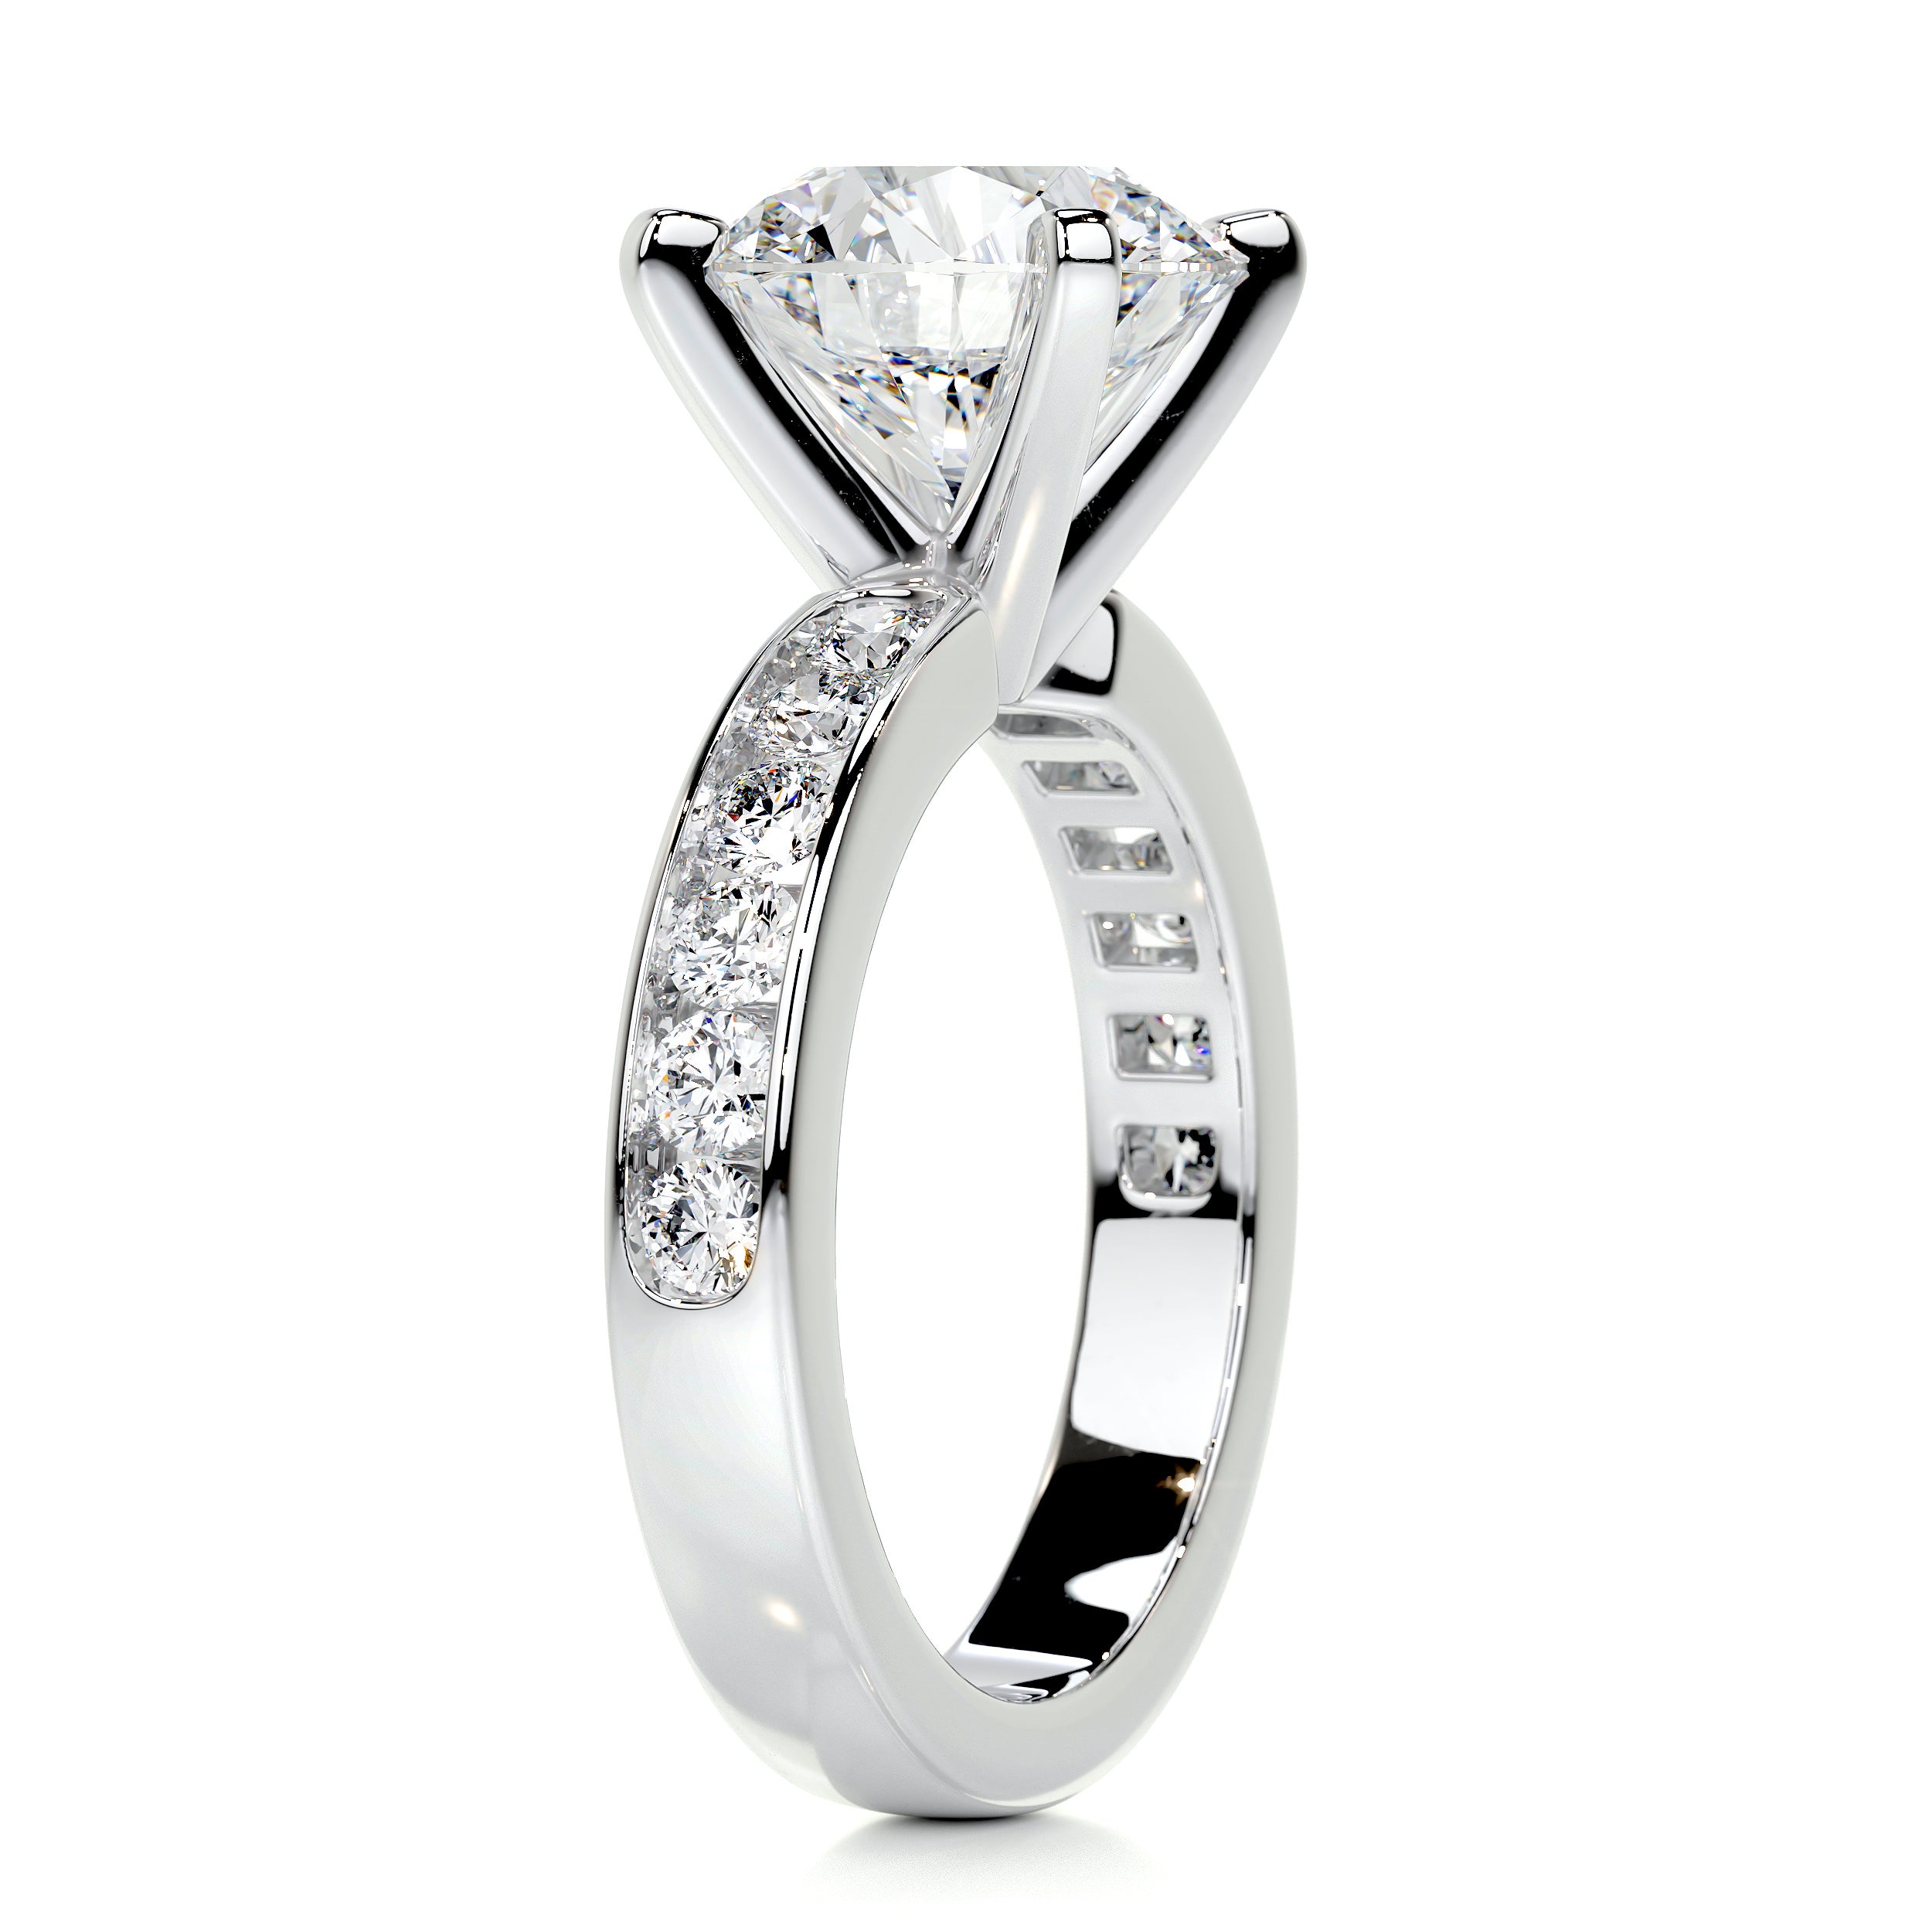 Giselle Diamond Engagement Ring   (3.50 Carat) -14K White Gold